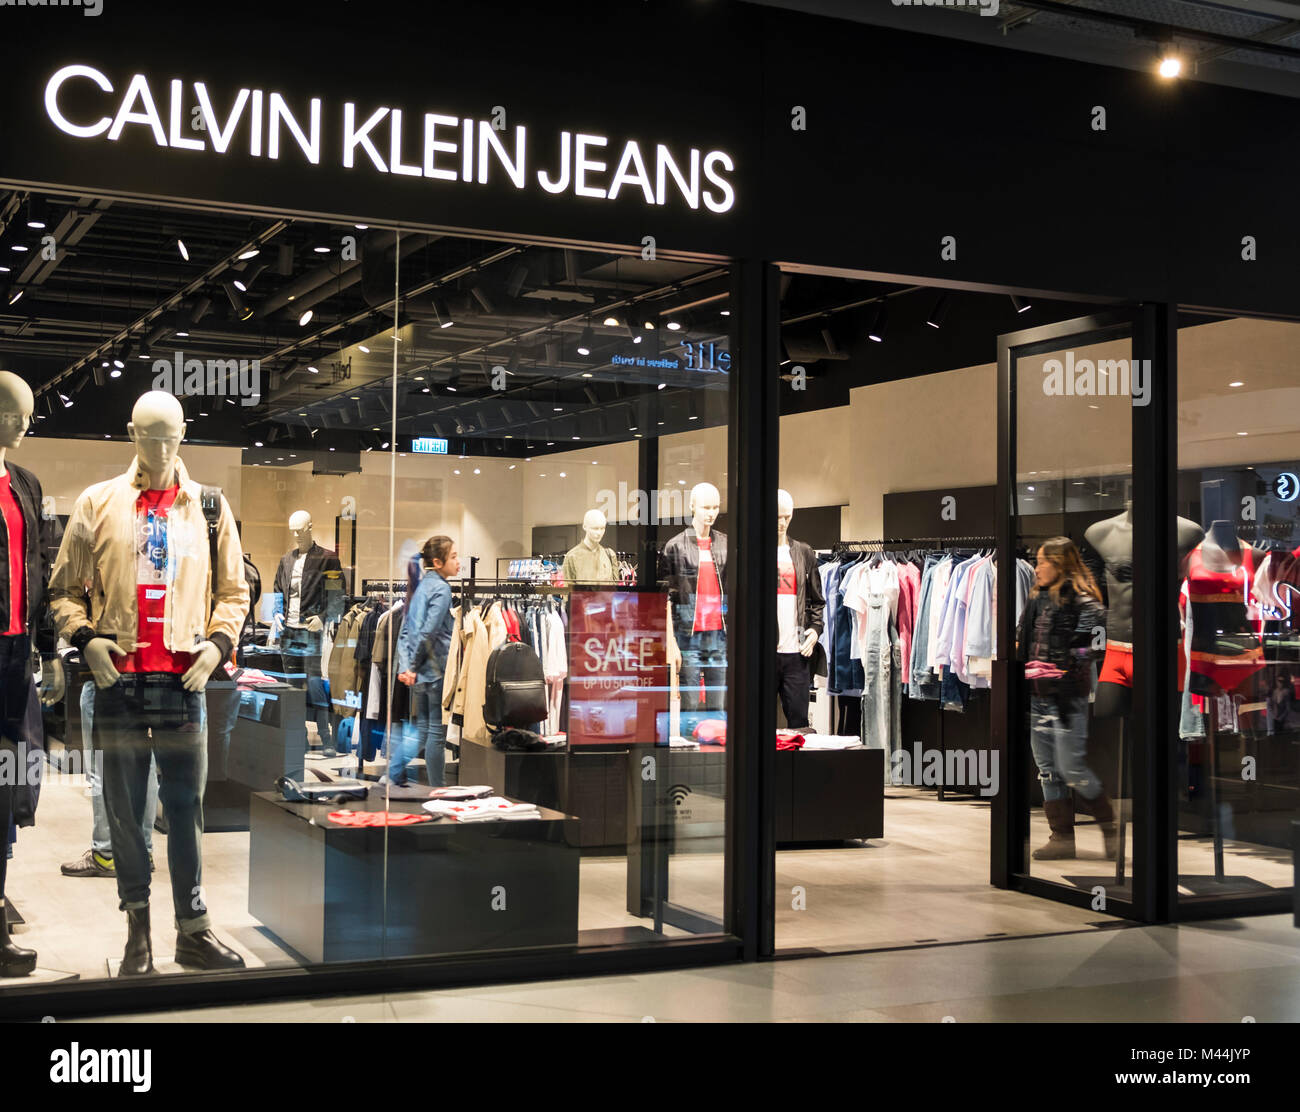 Calvin klein clothing immagini e fotografie stock ad alta risoluzione -  Alamy